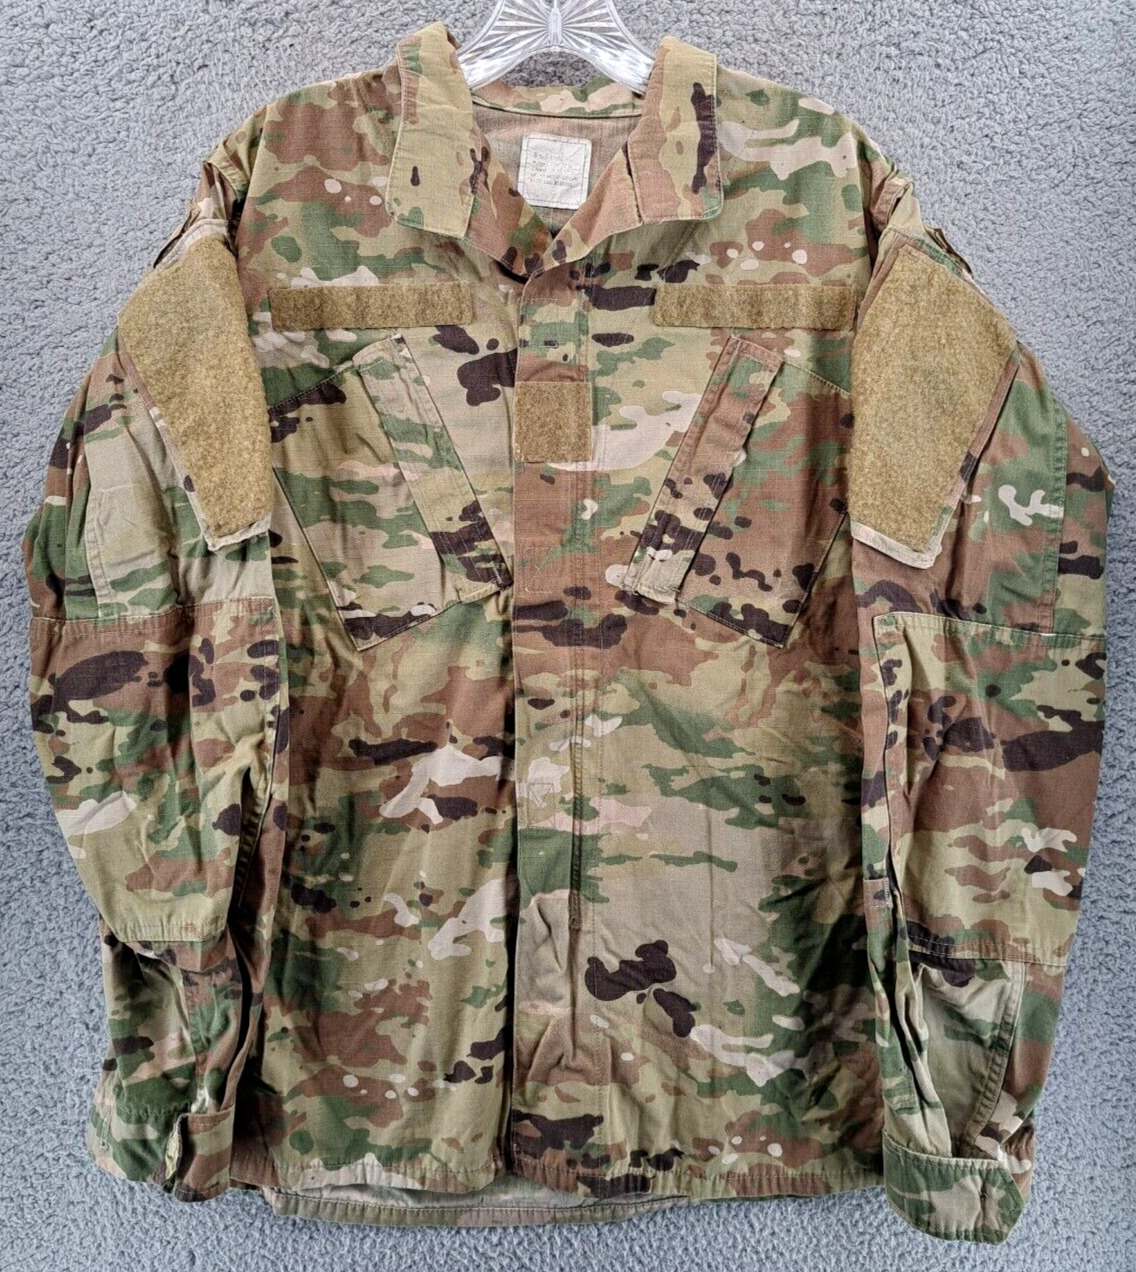 USGI Army Combat Coat Jacket Unisex Size Small Long Flame Resistant Camoflauge